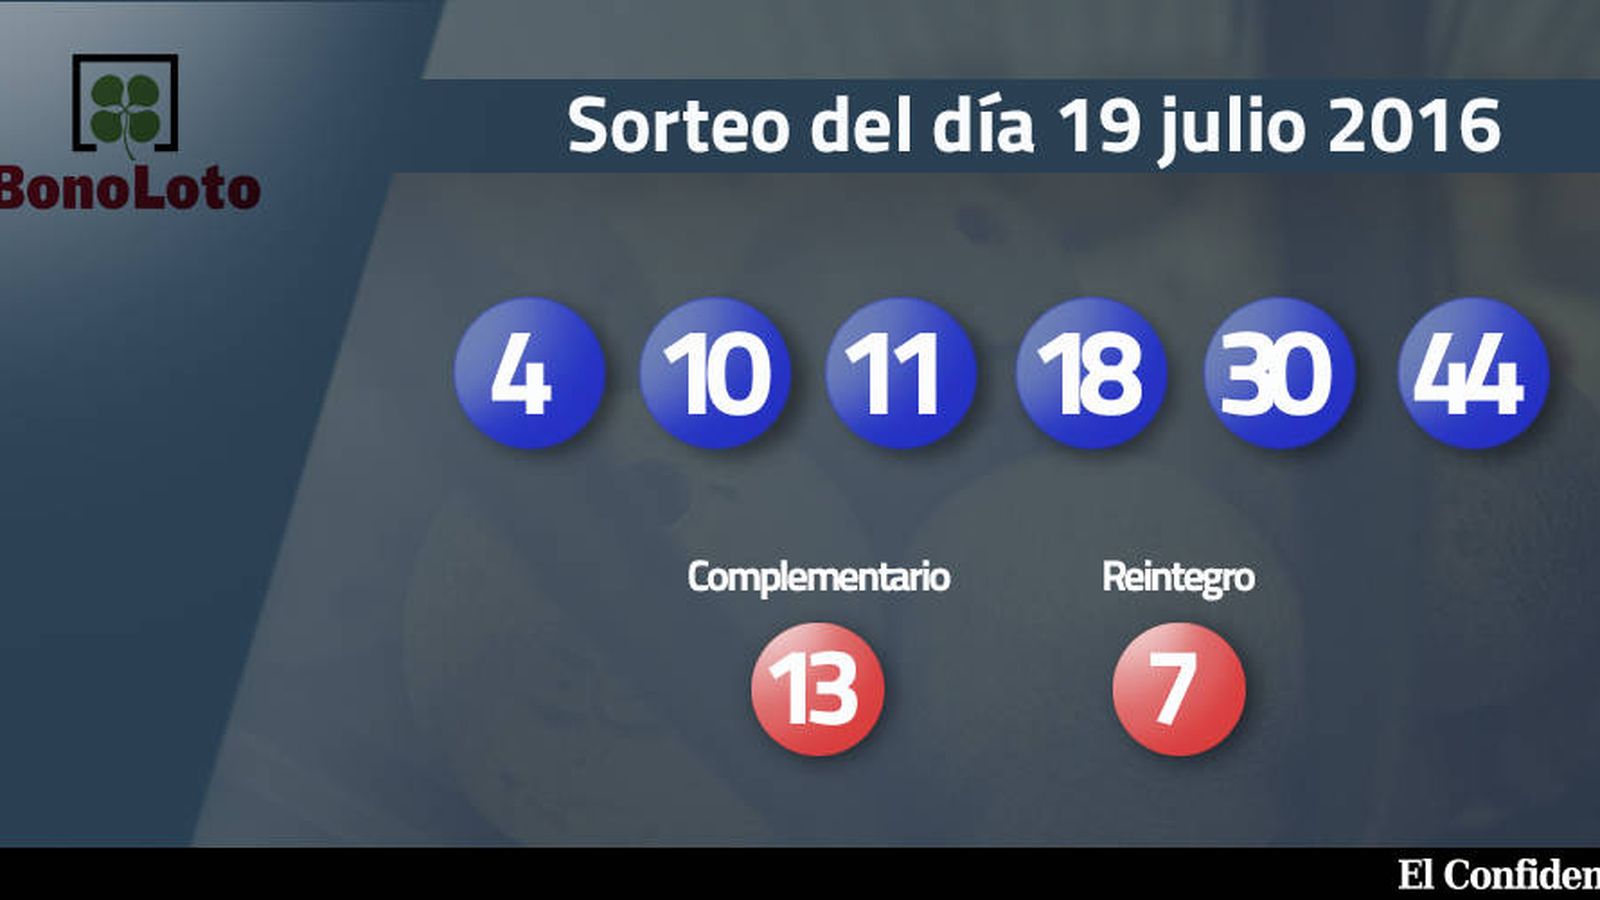 Foto: Resultados del sorteo de la Bonoloto del 19 julio 2016 (EC)